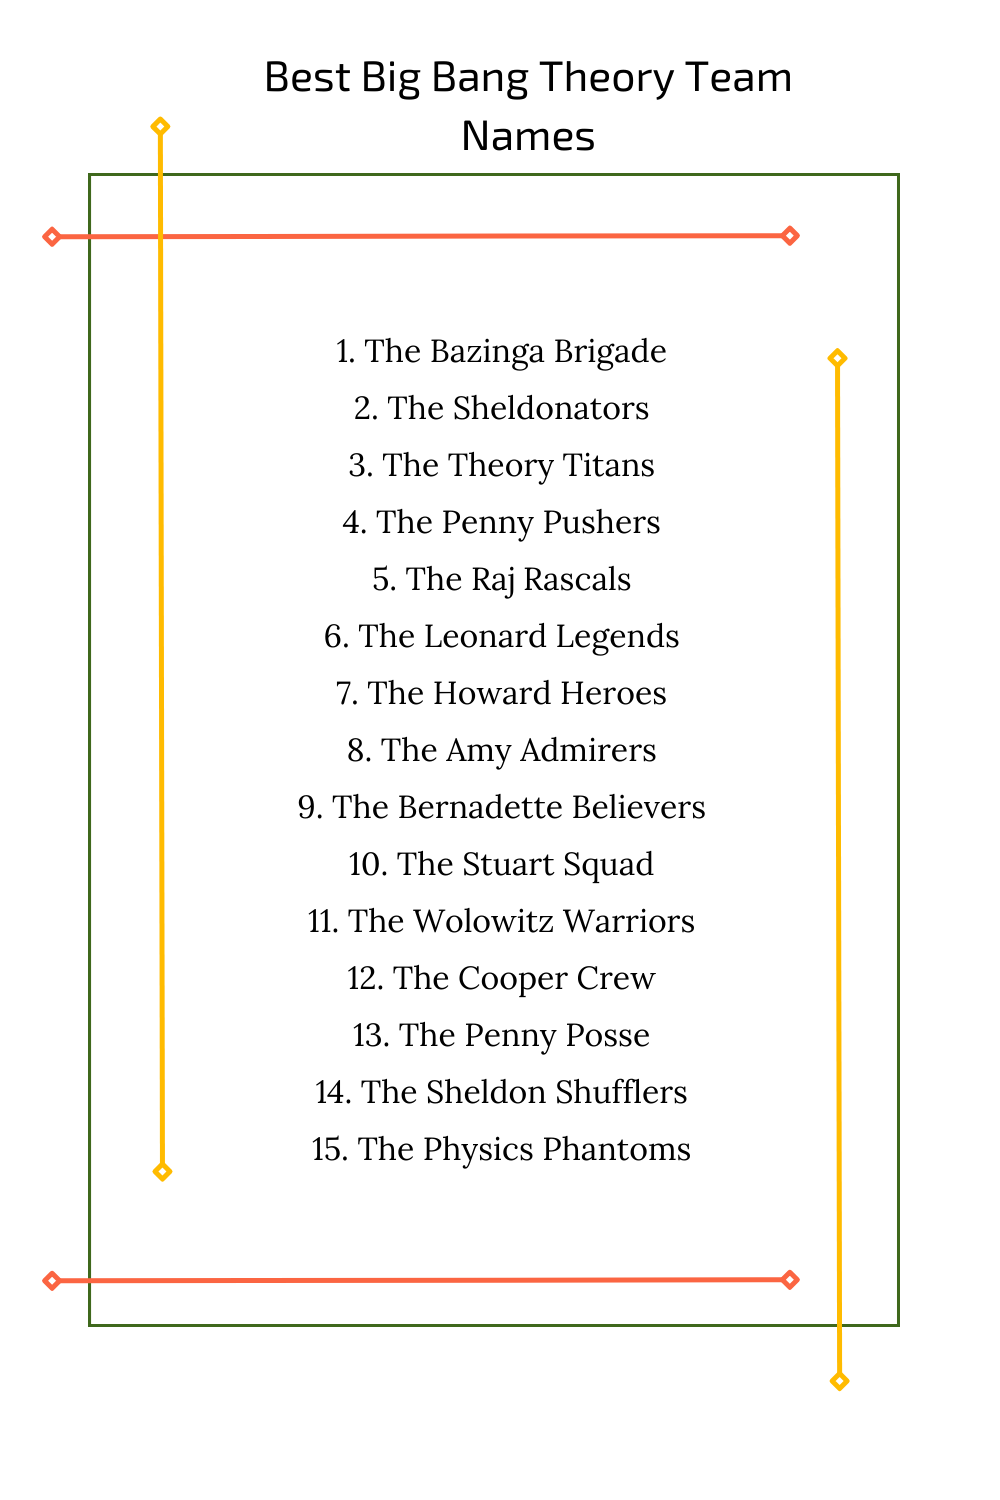 Best Big Bang Theory Team Names